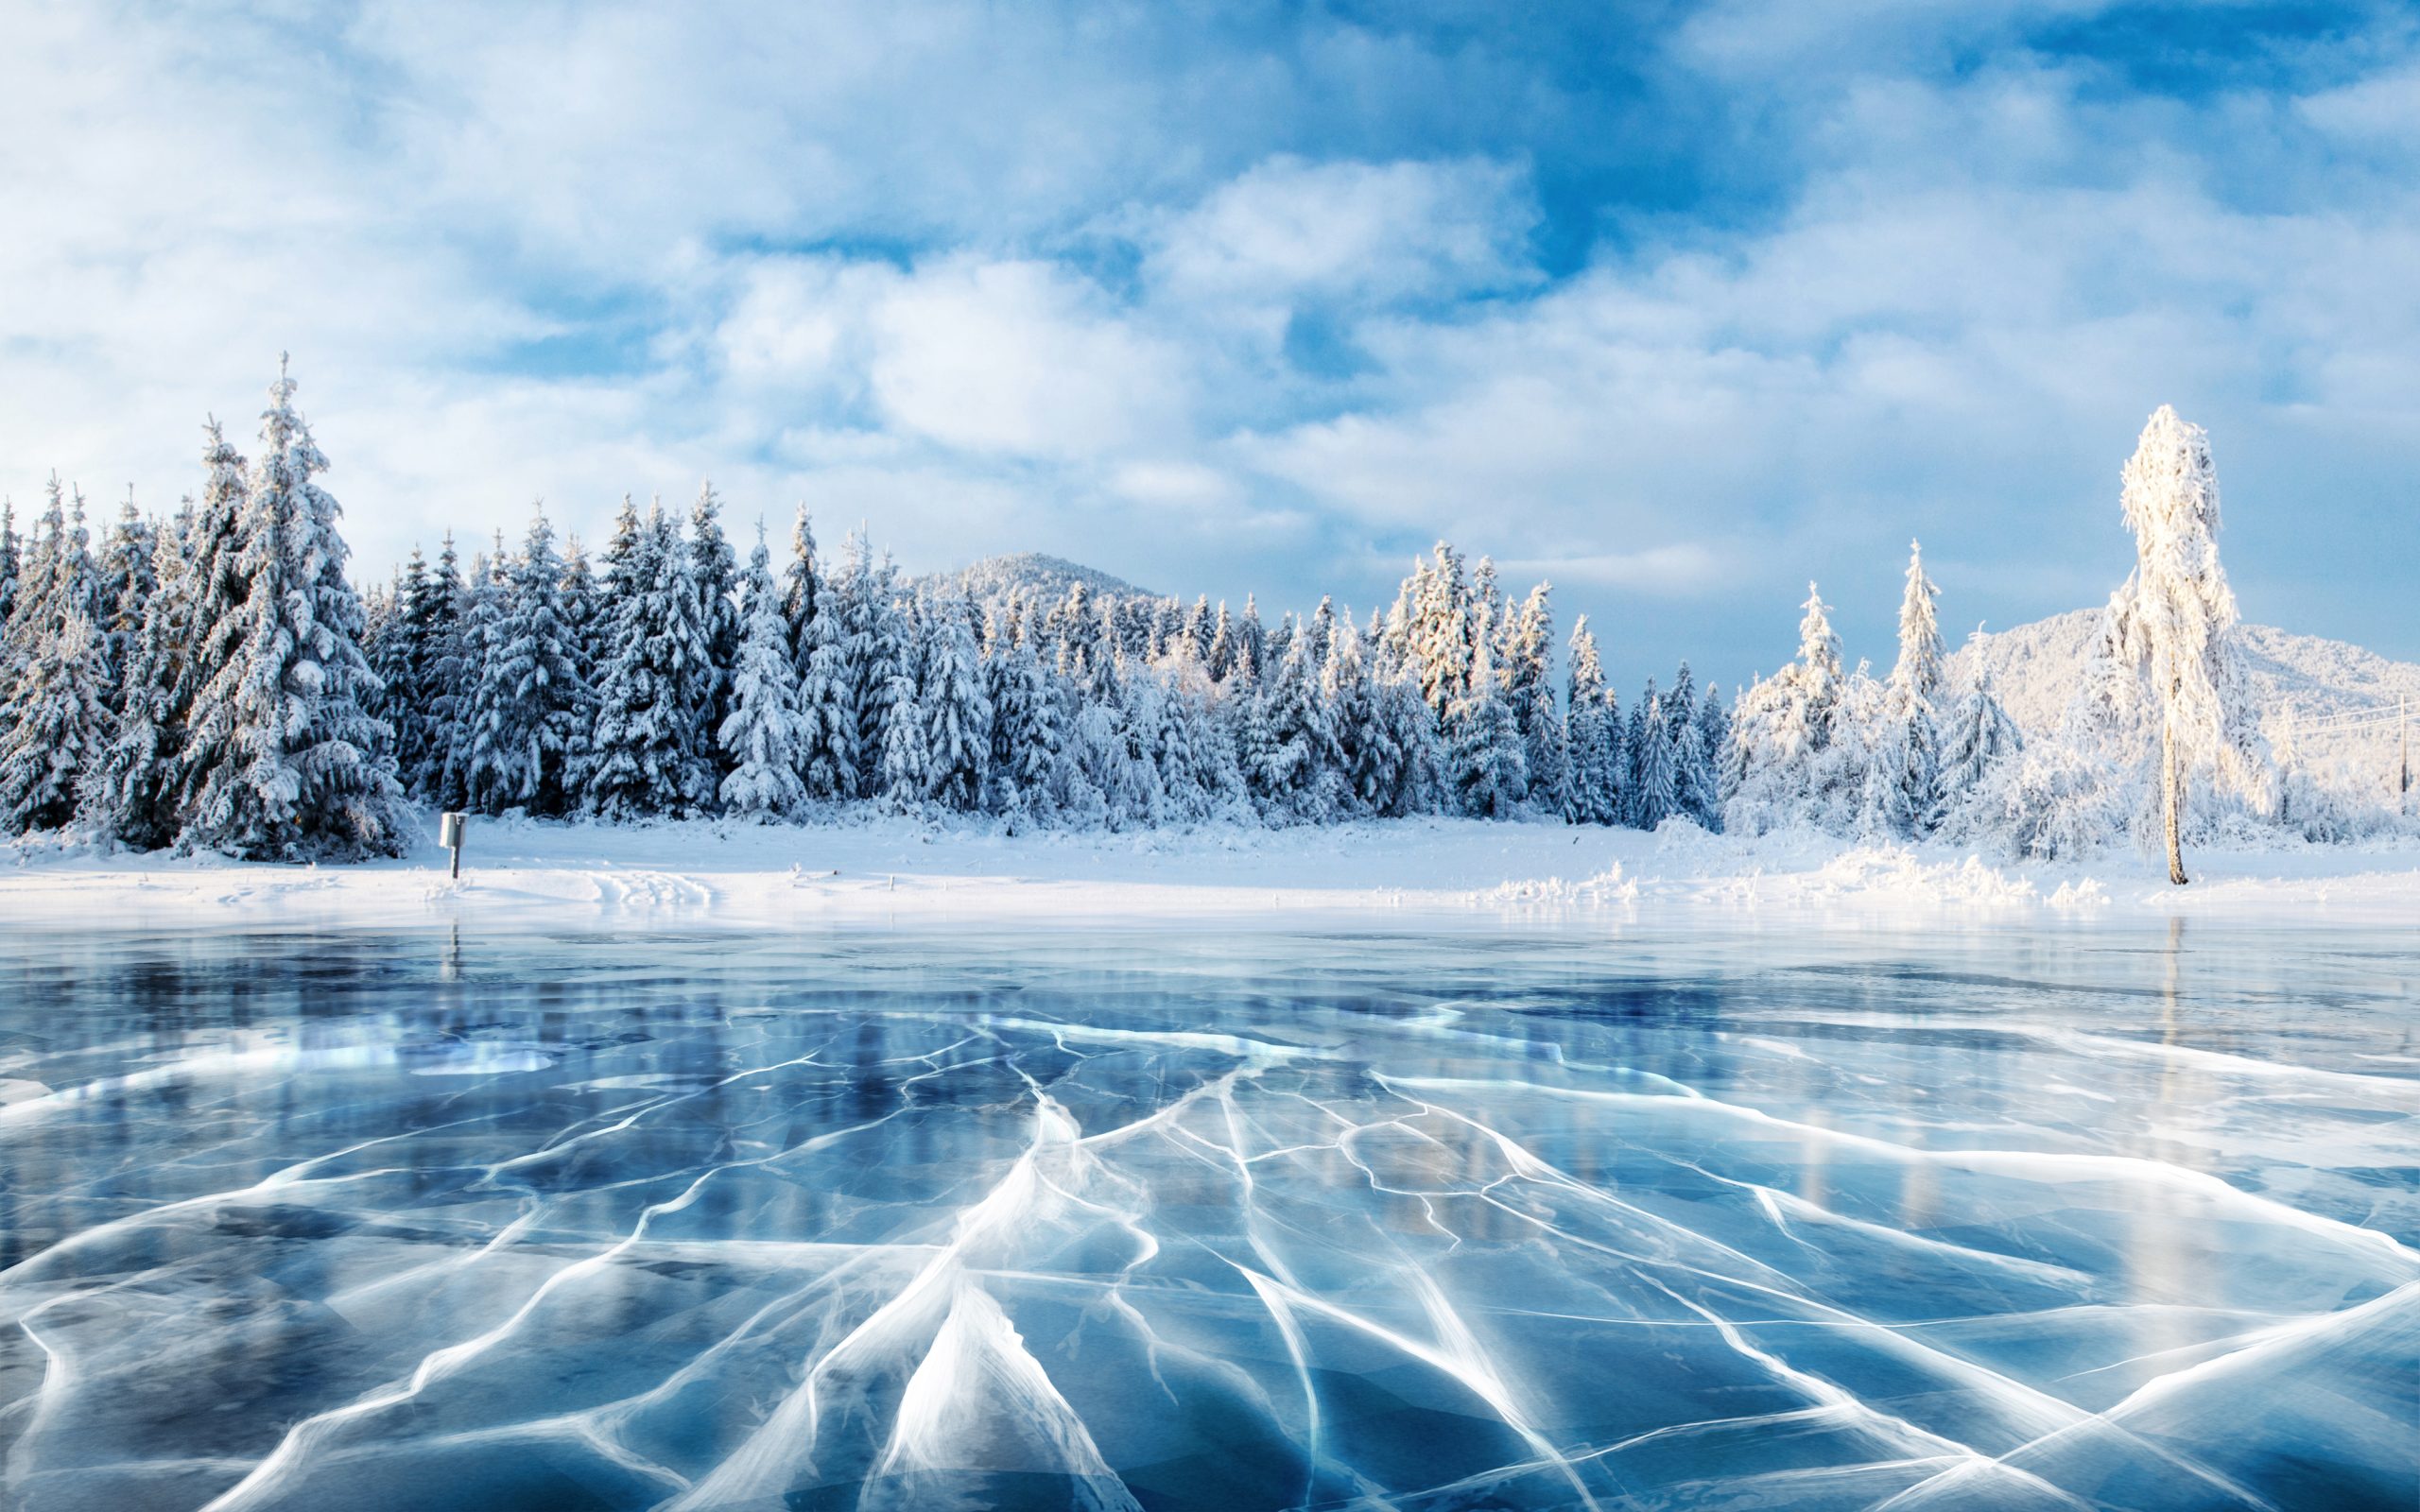 Luminen maisema, jonka keskiössä jäätynyt järvi ja sen ympärillä puita.